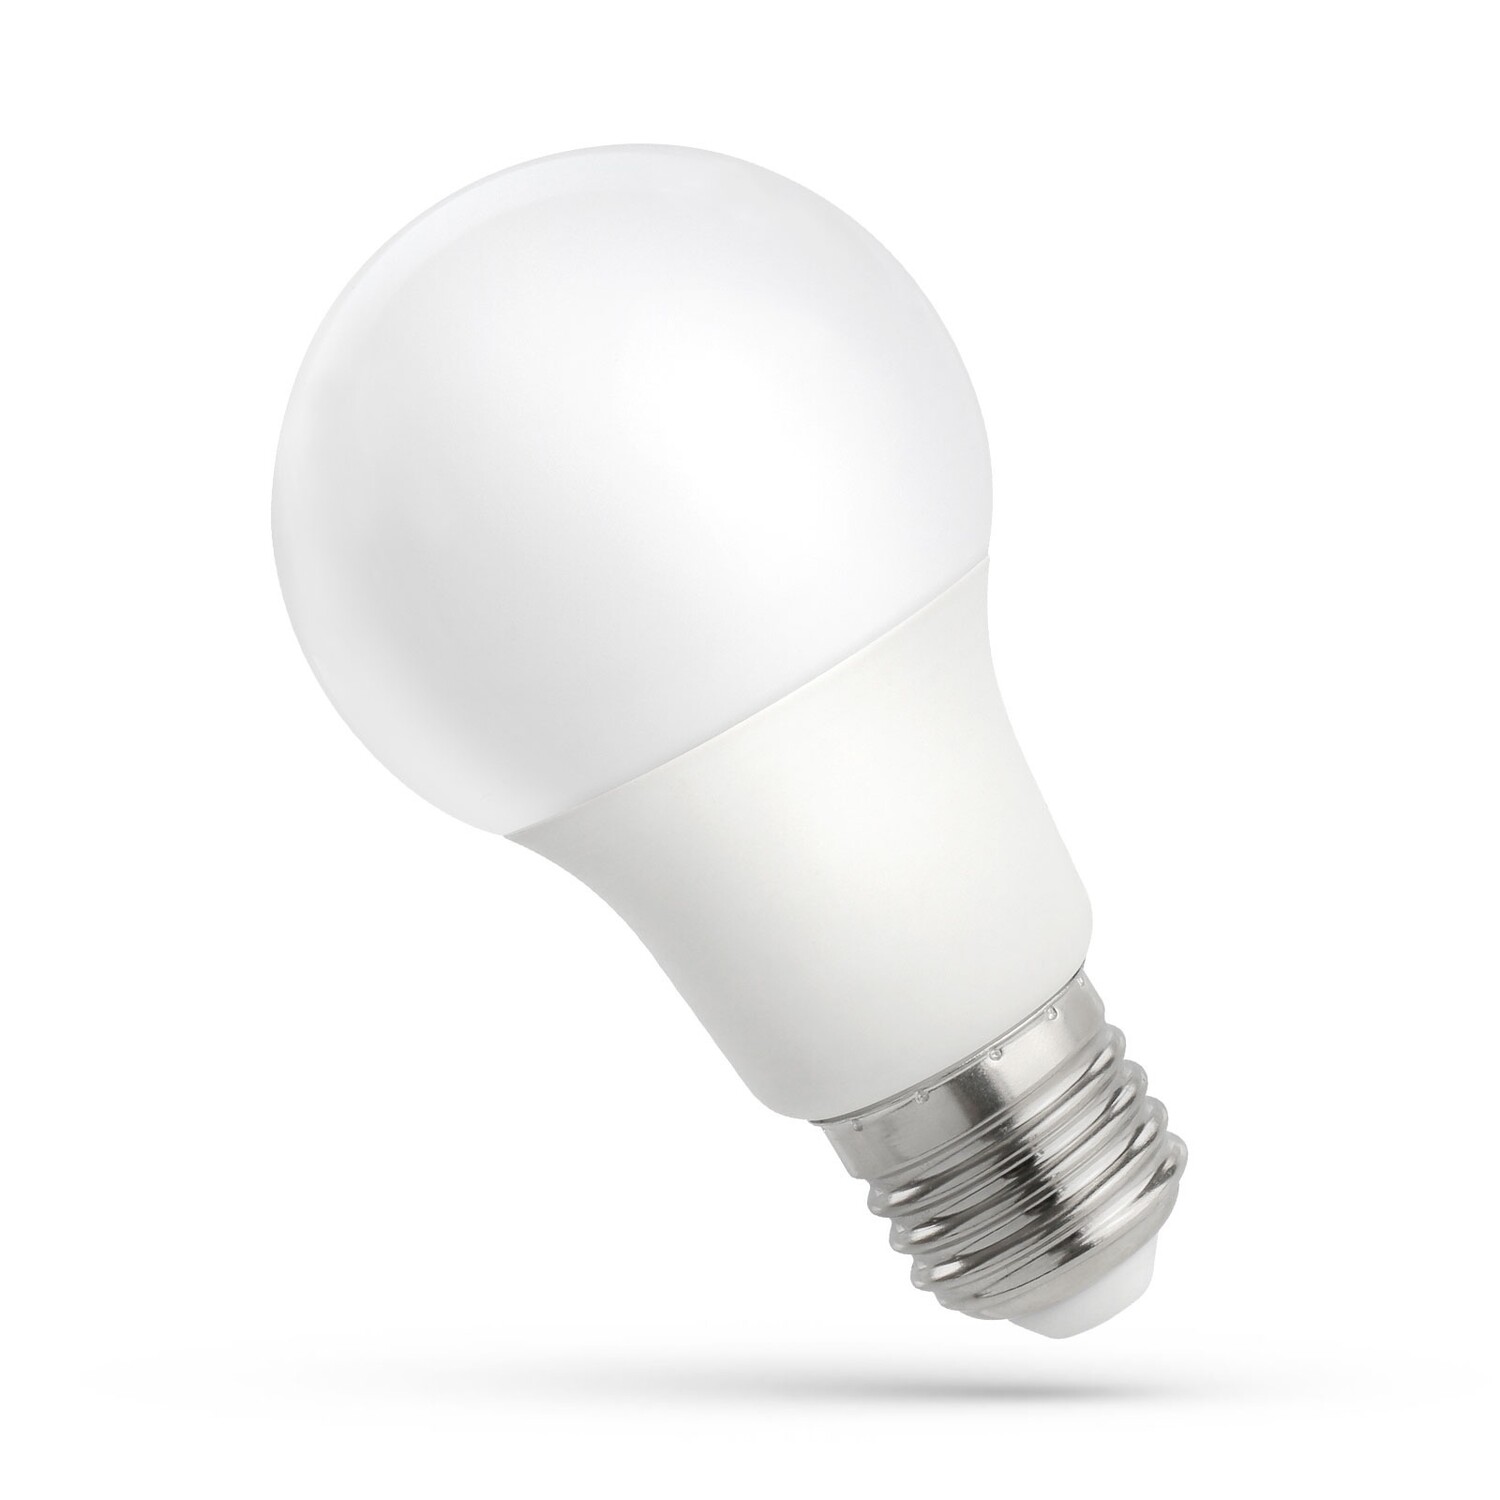 LED Lampe - E27 Sockel - 18W entspricht 180W - Warmweiß 3000K 